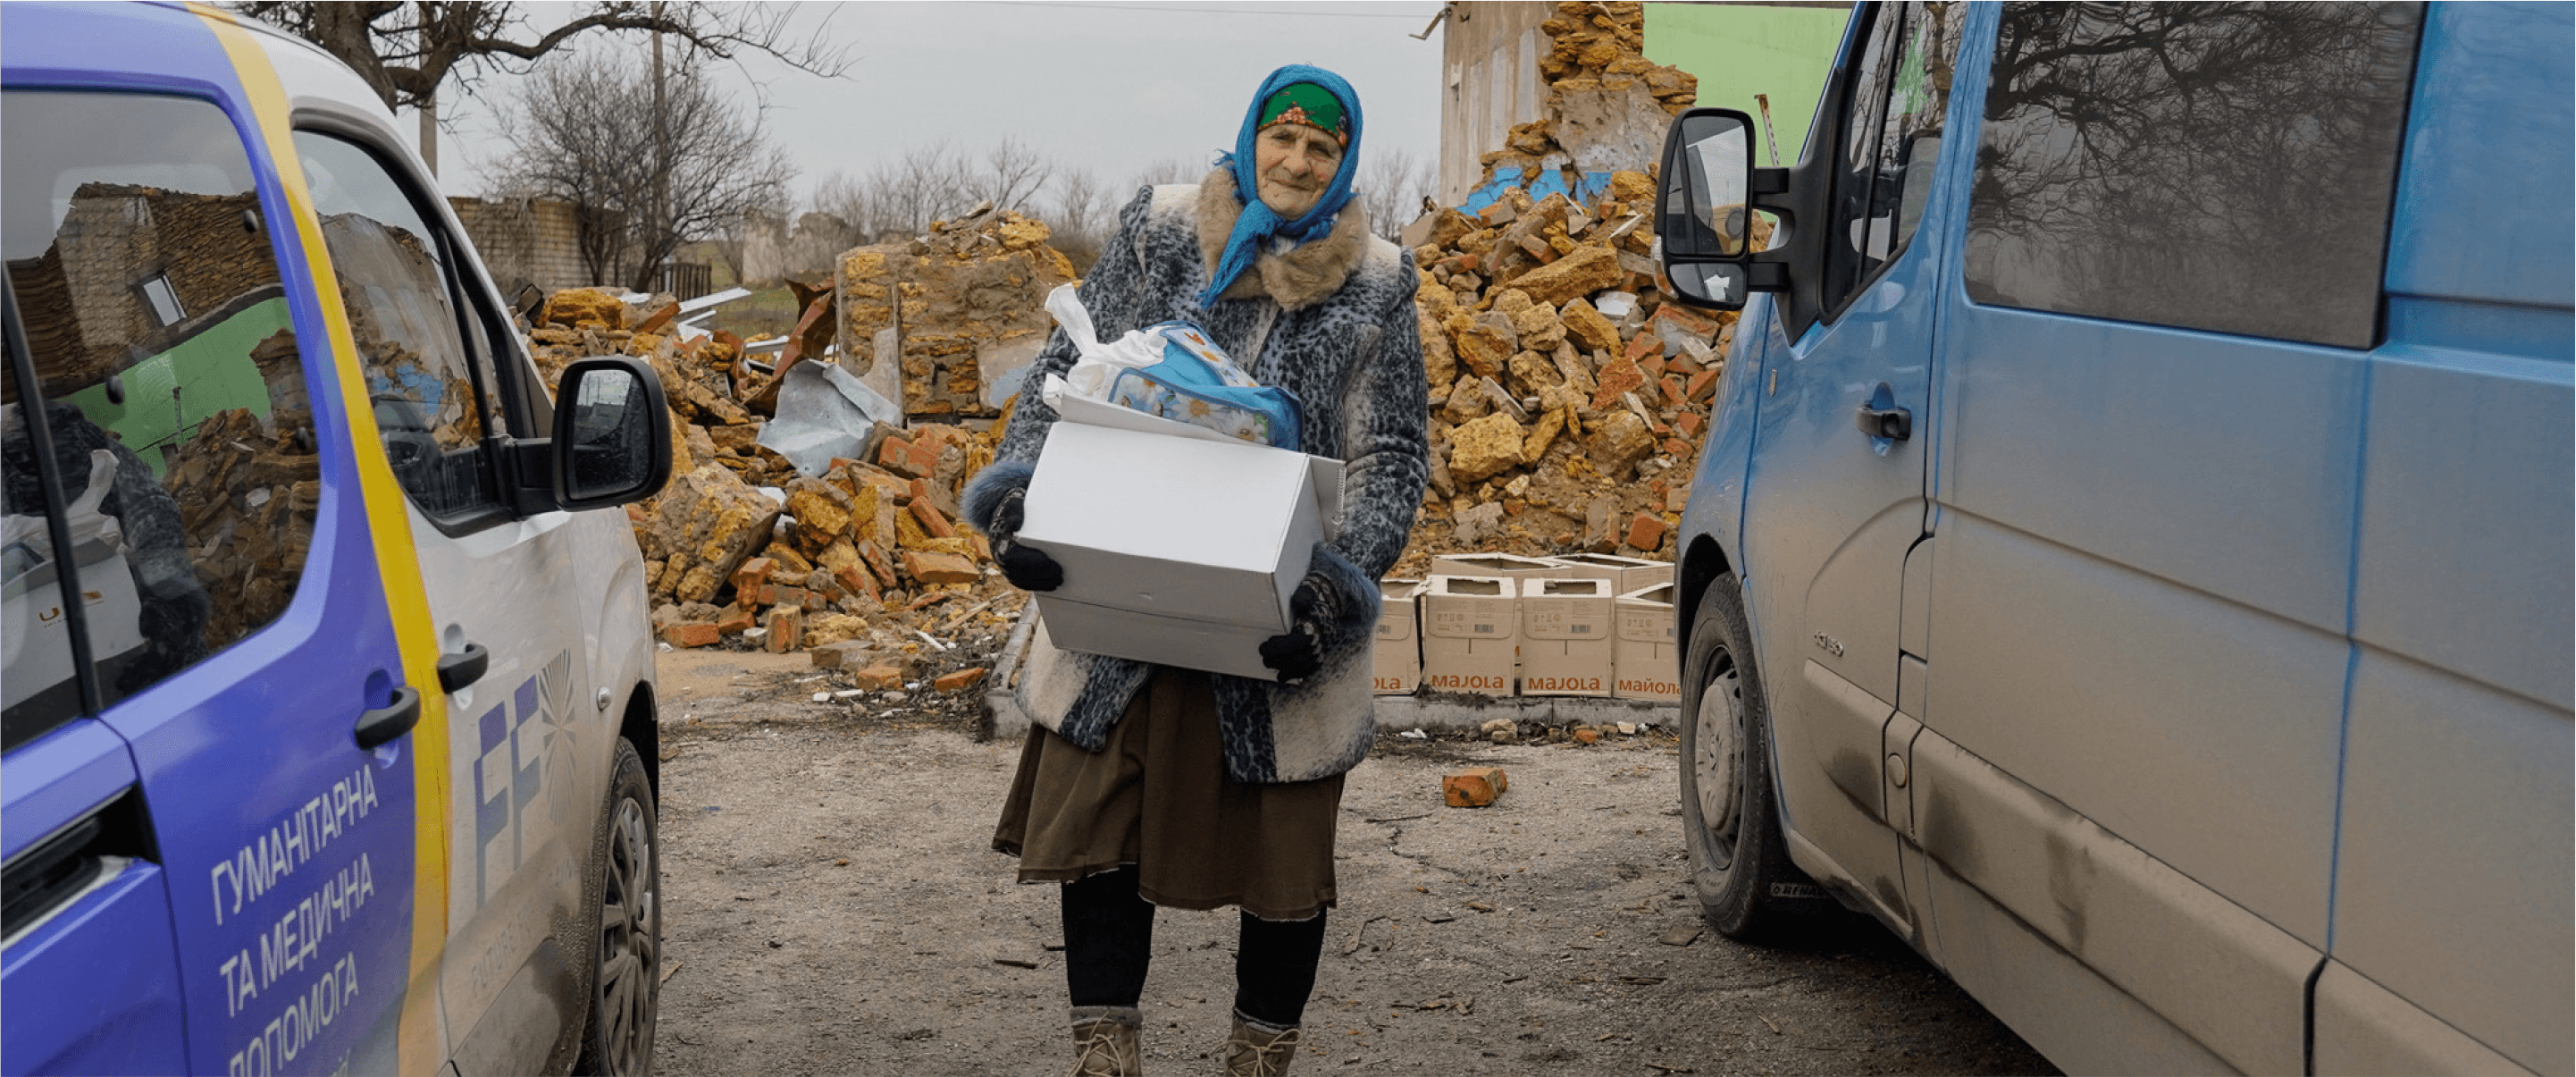 Misja humanitarna do obwodu chersońskiego 22-23 lutego